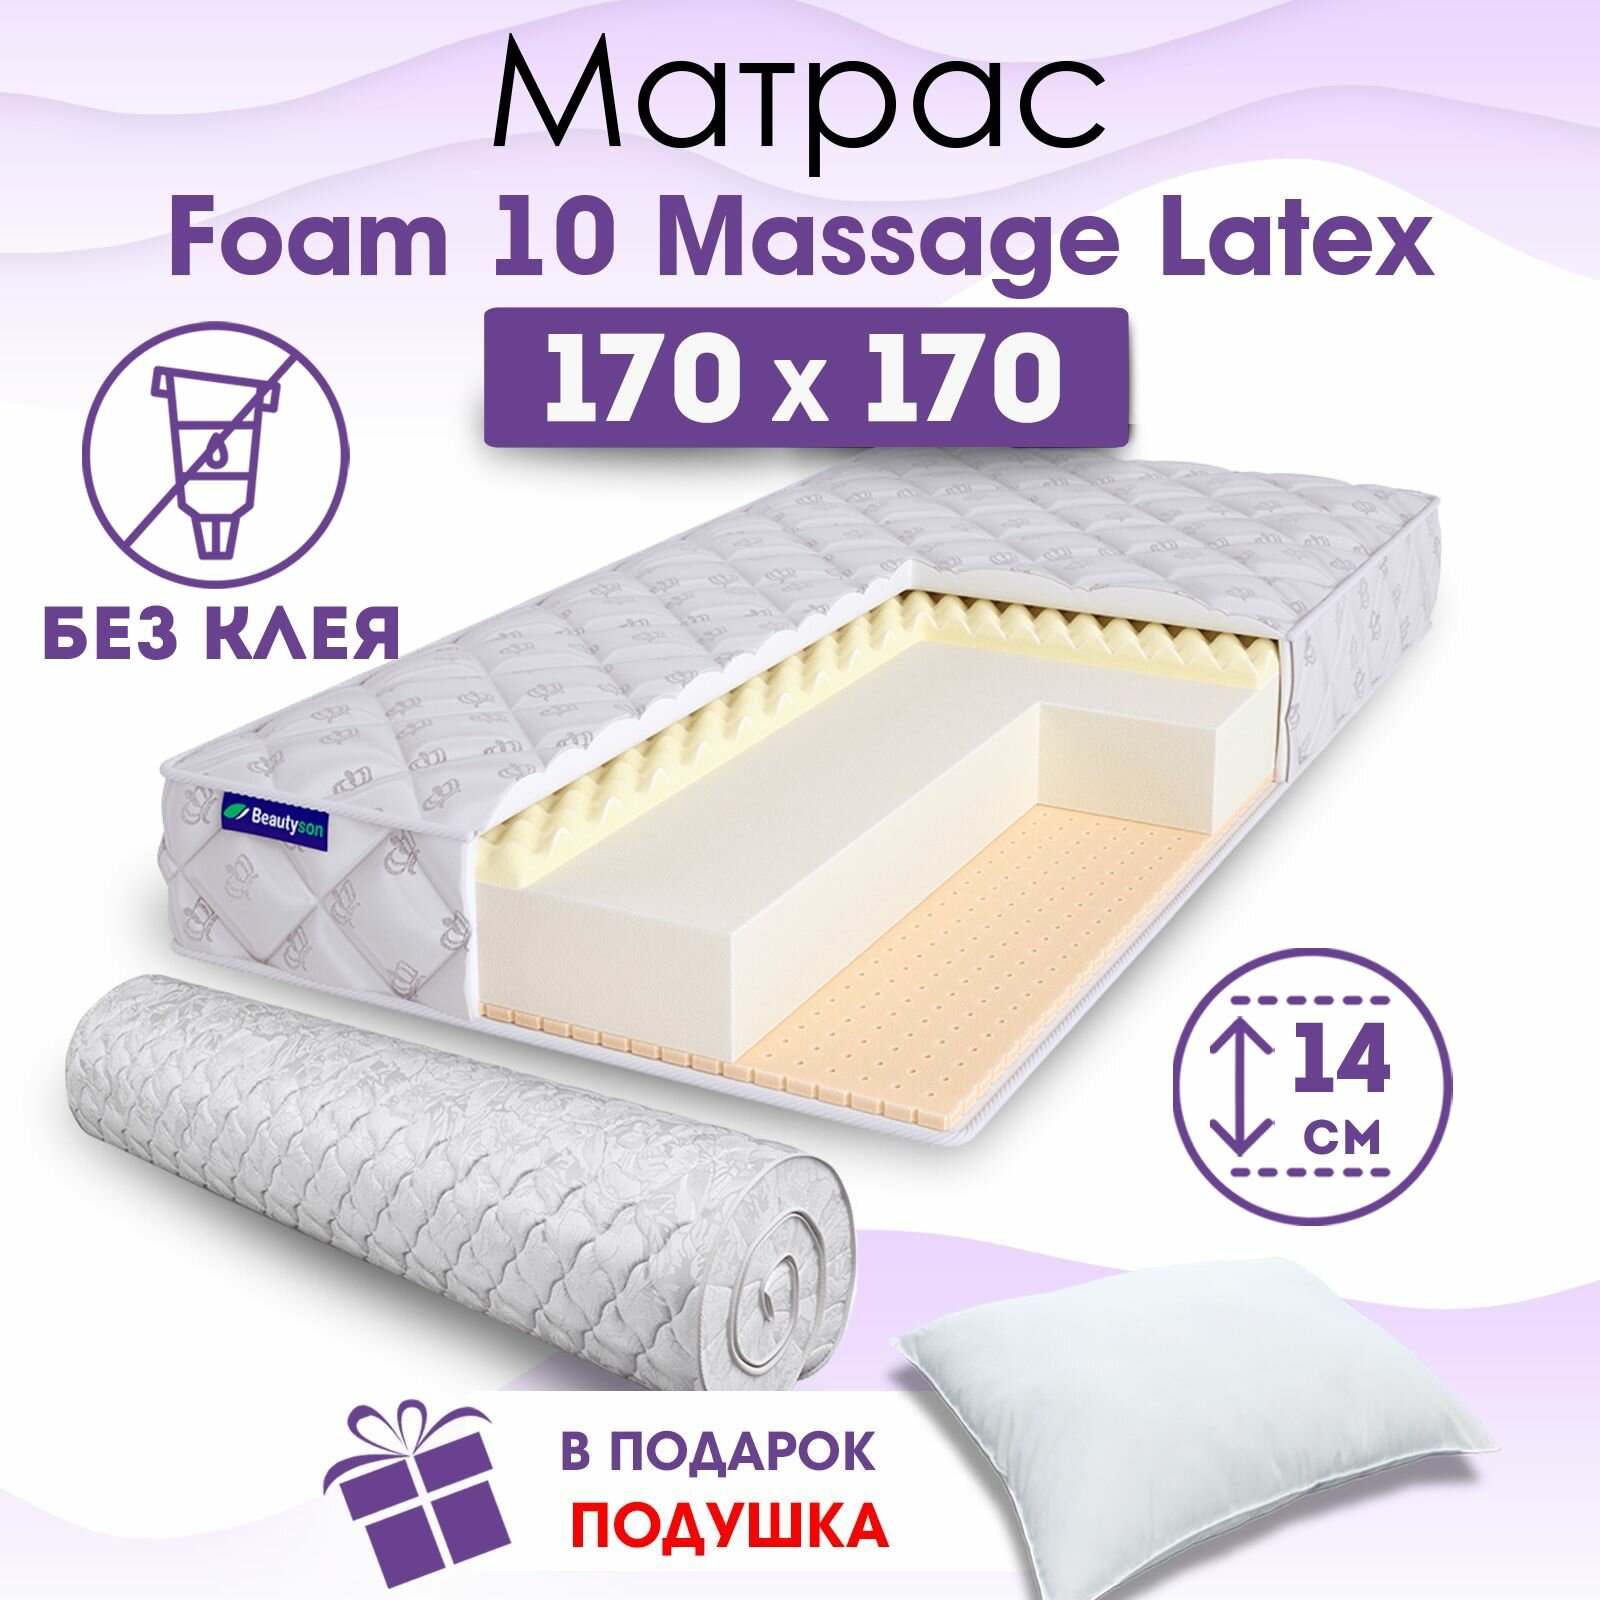 Ортопедический матрас Beautyson Foam 10 Massage Latex без клея, 170х170, 14 см, беспружинный, двухспальный, на кровать, для дивана, мягкий, не высокий